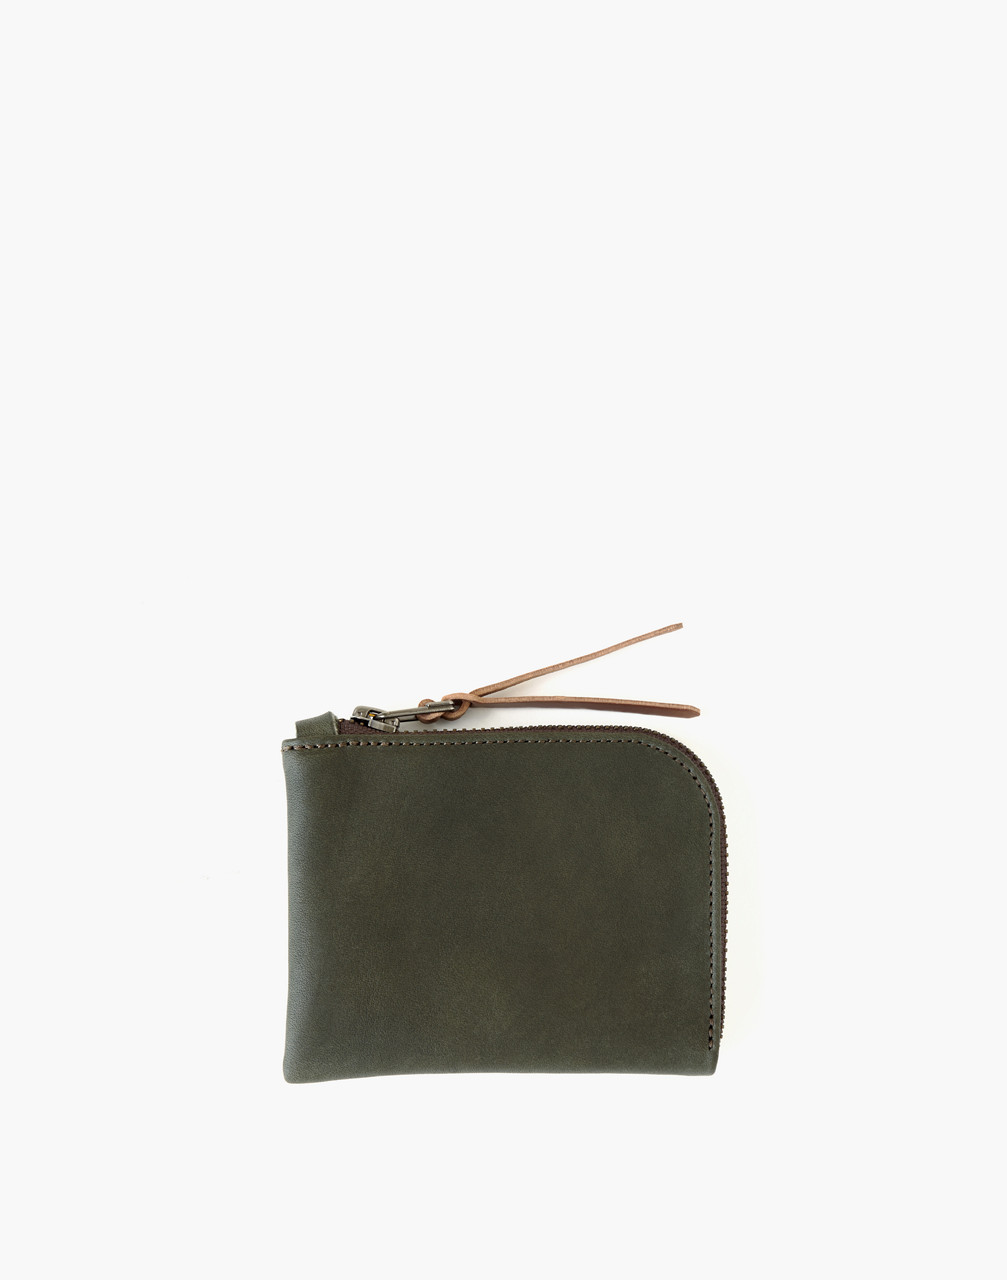 Mw Makr Leather Zip Luxe Wallet In Green